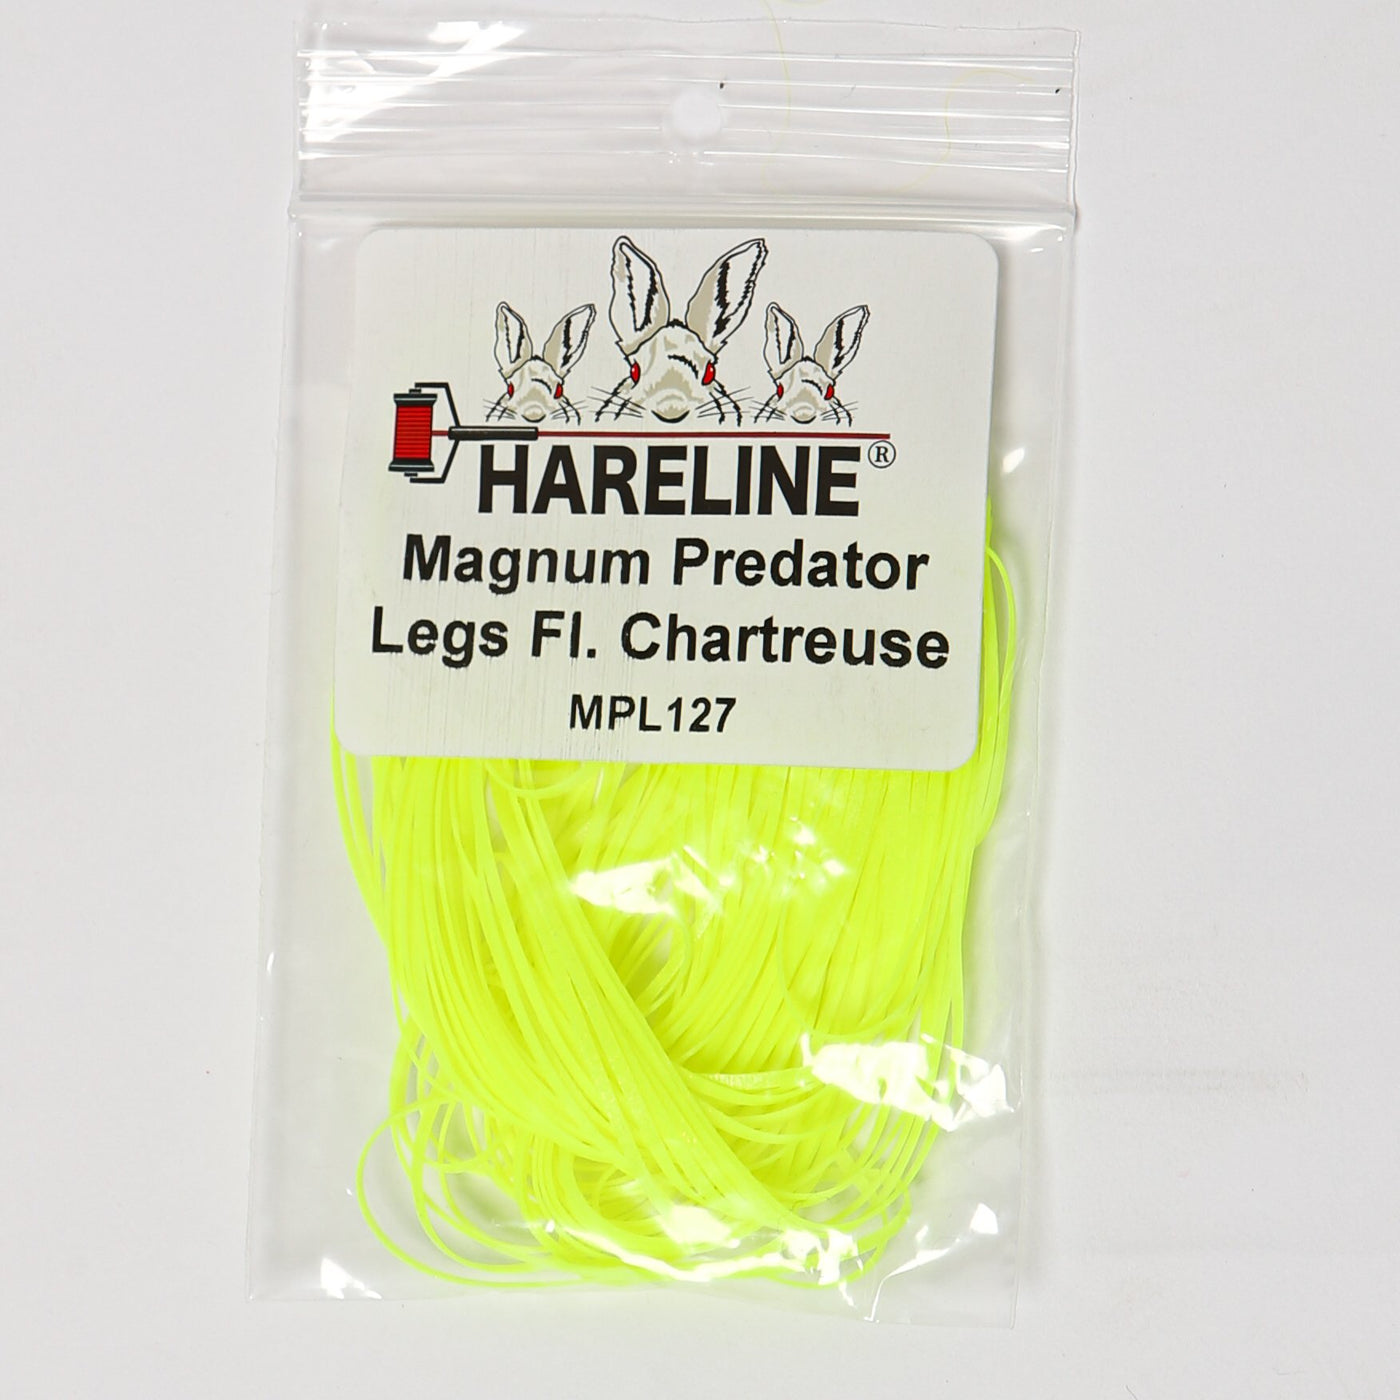 Hareline Magnum Predator Legs